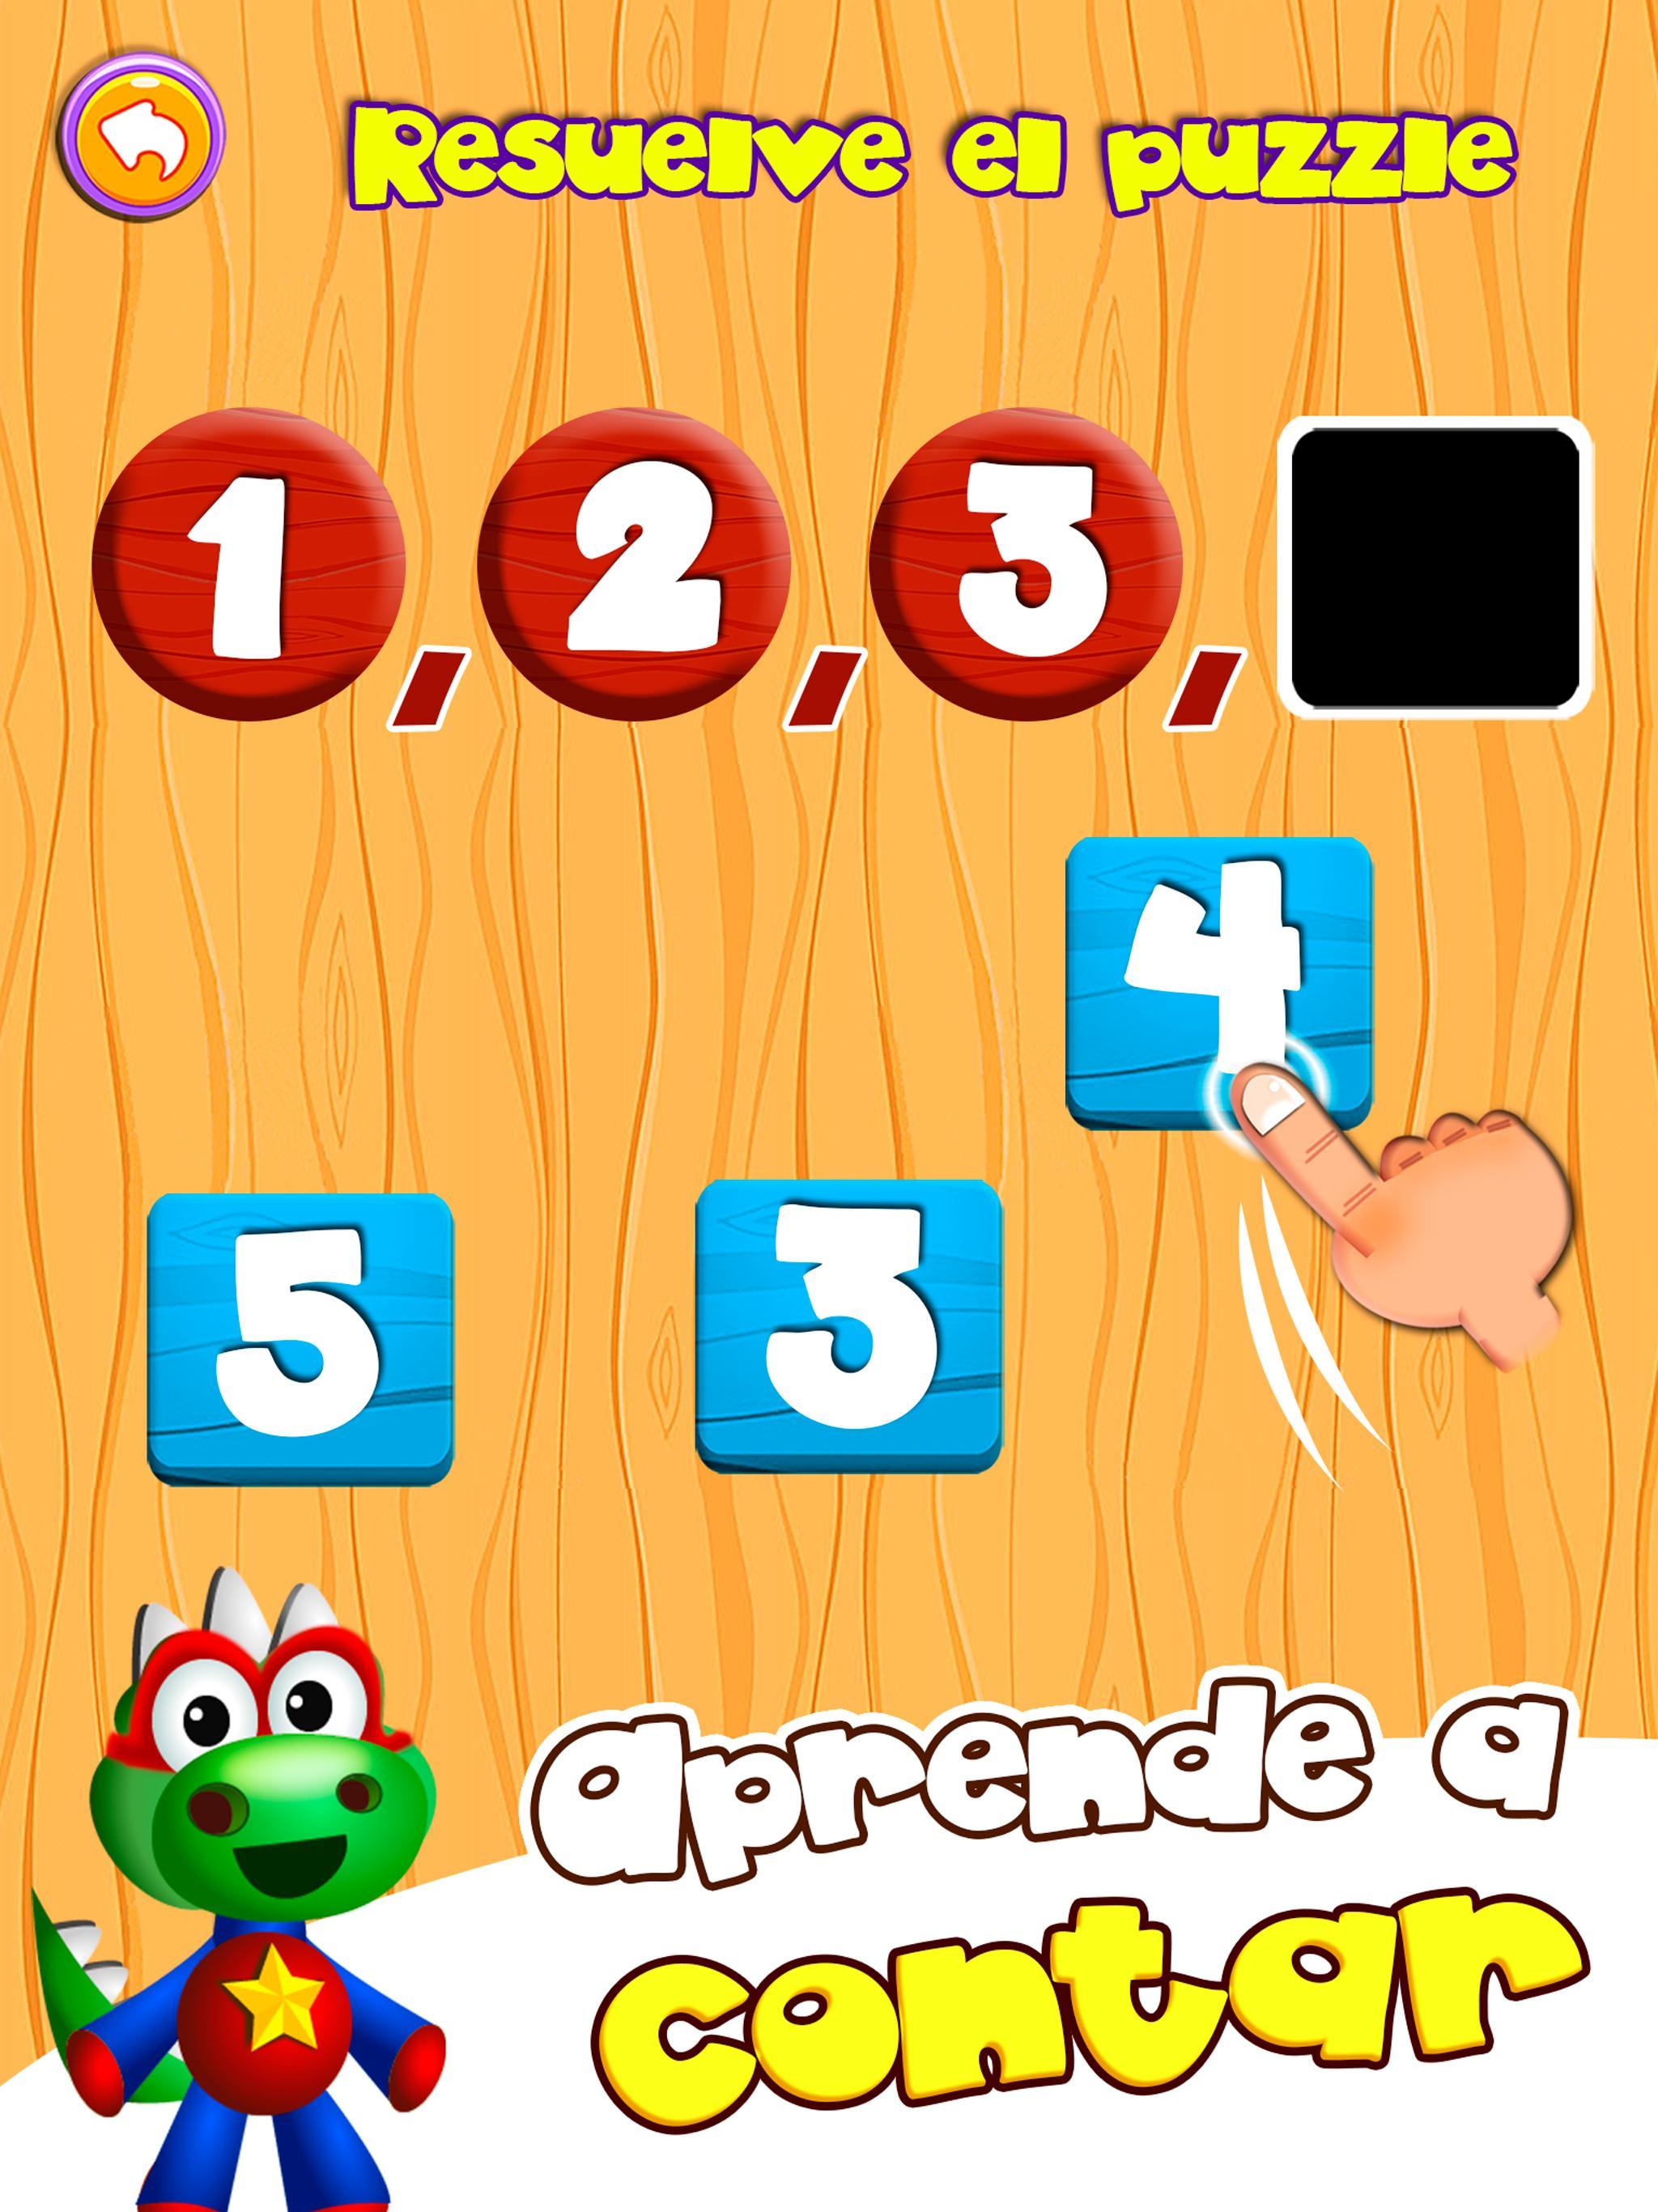 Juegos educativos Preescolar: Números y formas for Android - APK Download